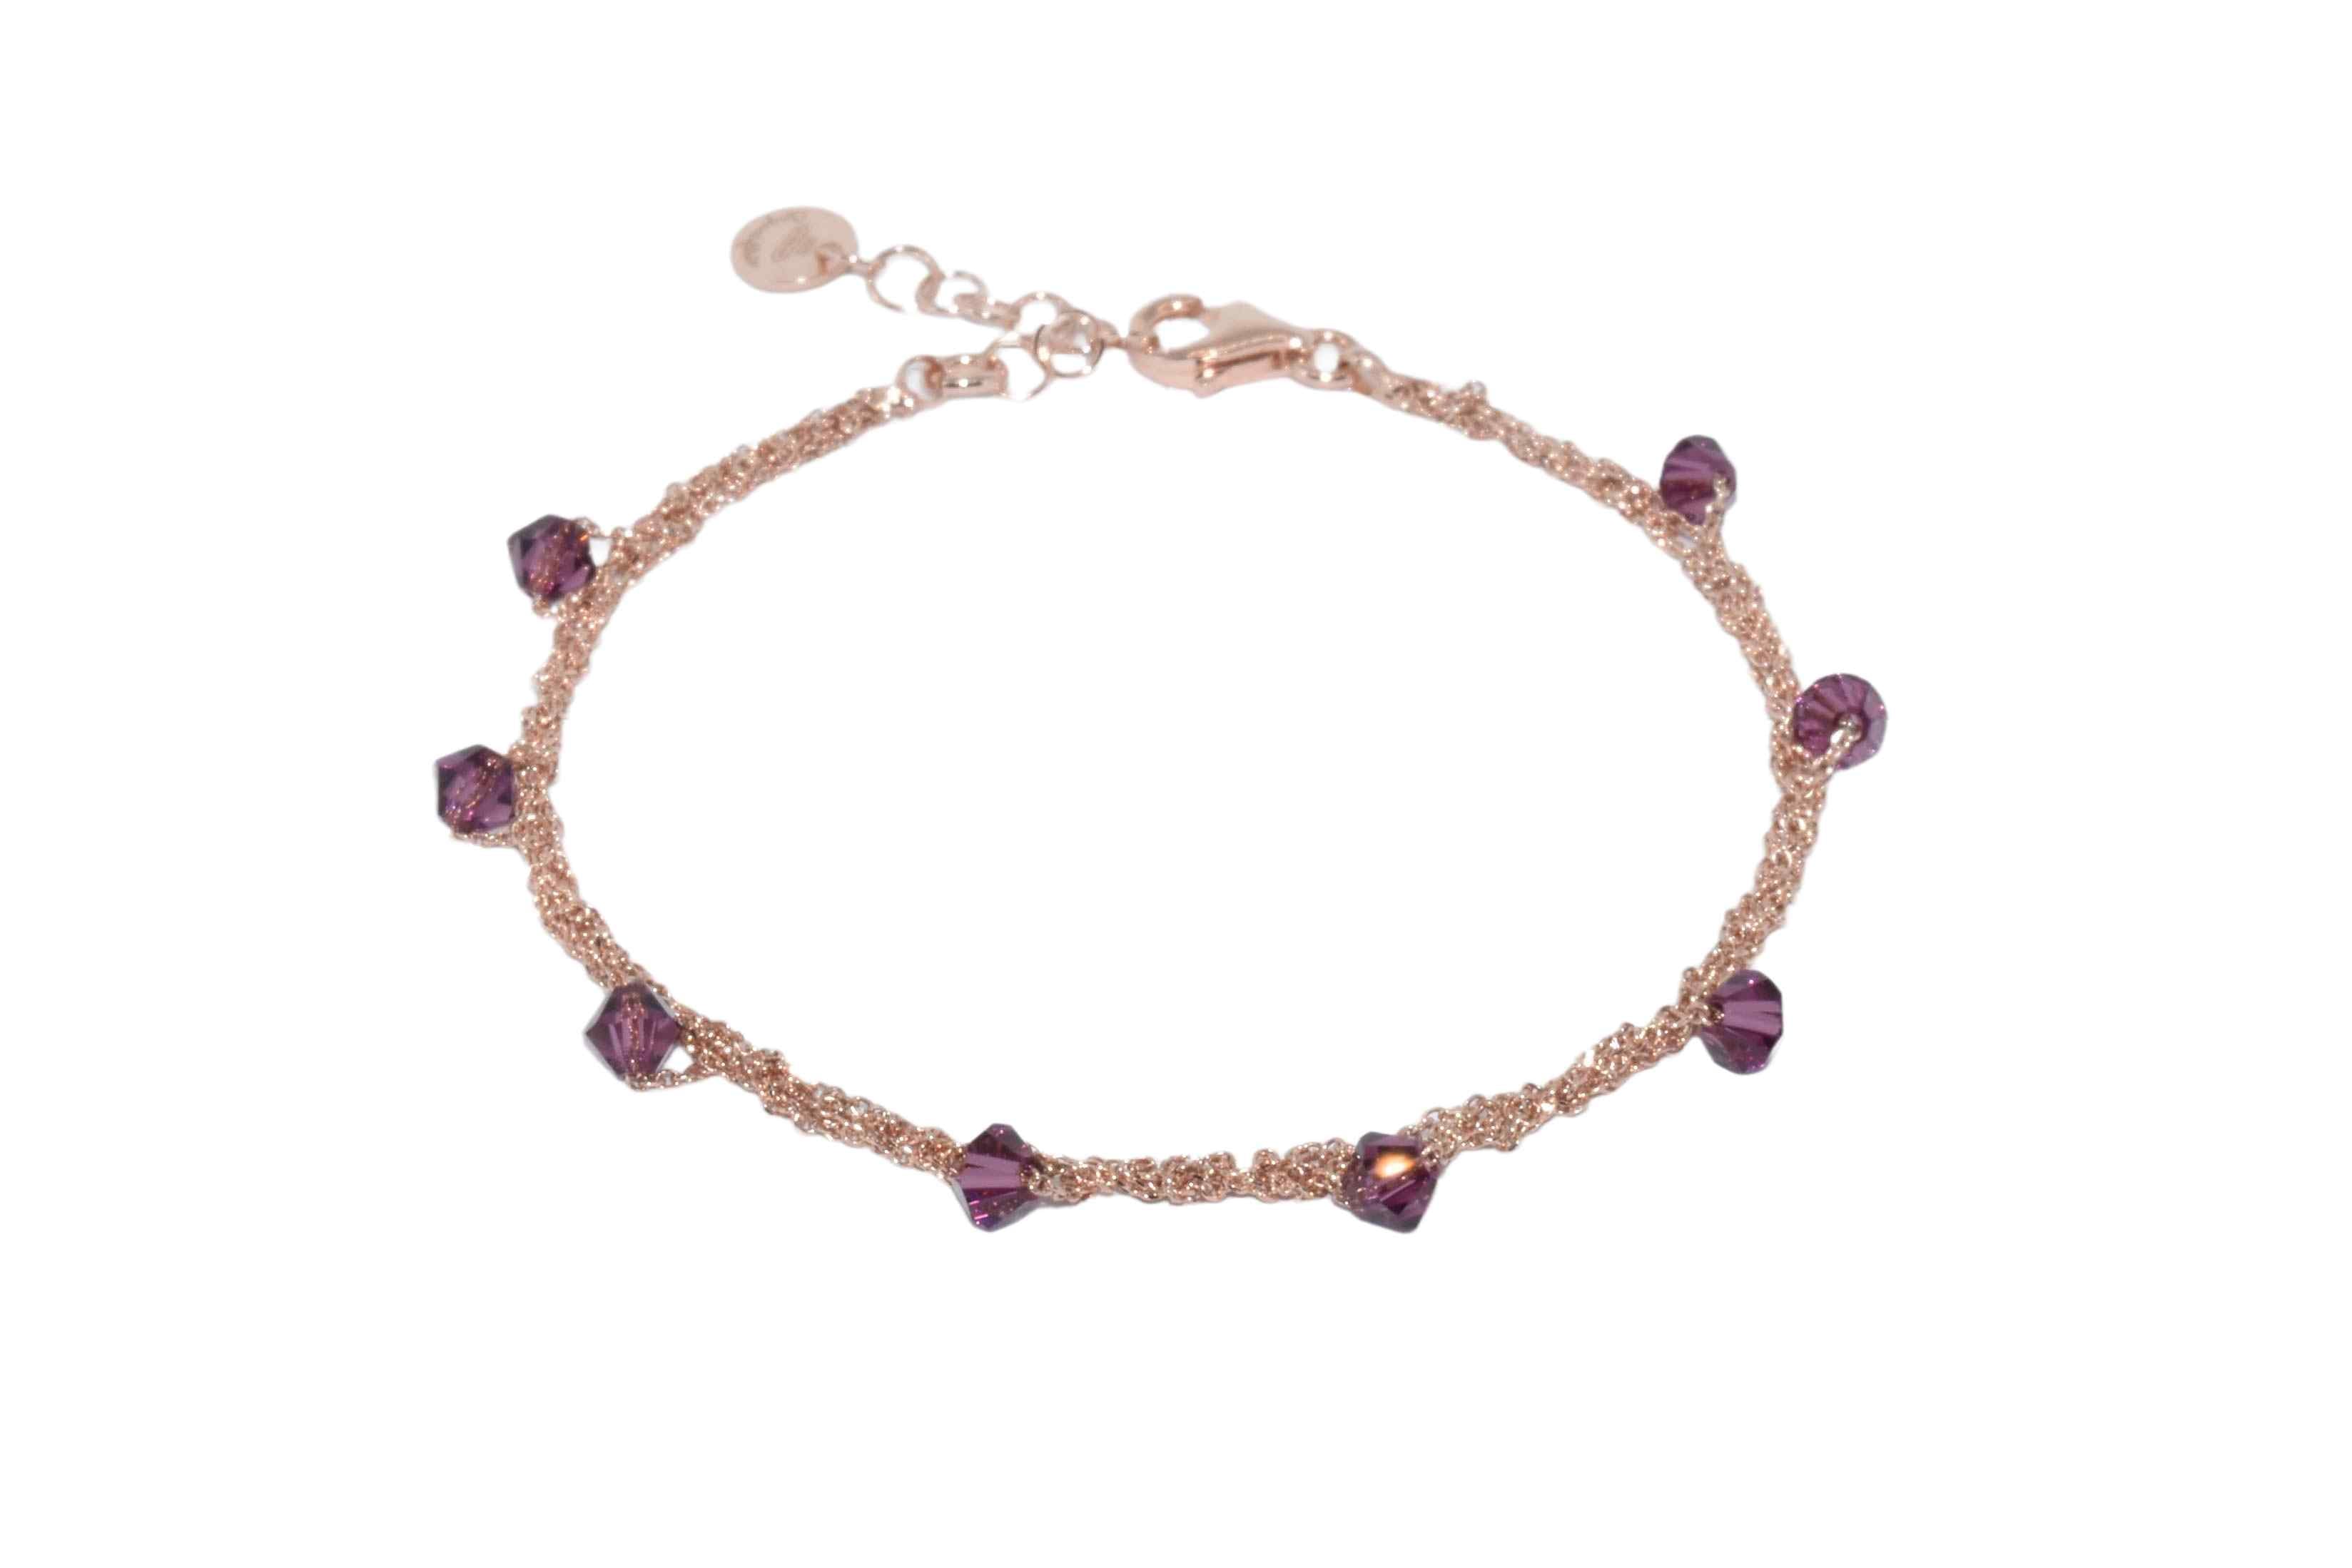 Bracciale-Uncinetto-rombi-viola-Argentofilato-in-argento-925-oro-rosa